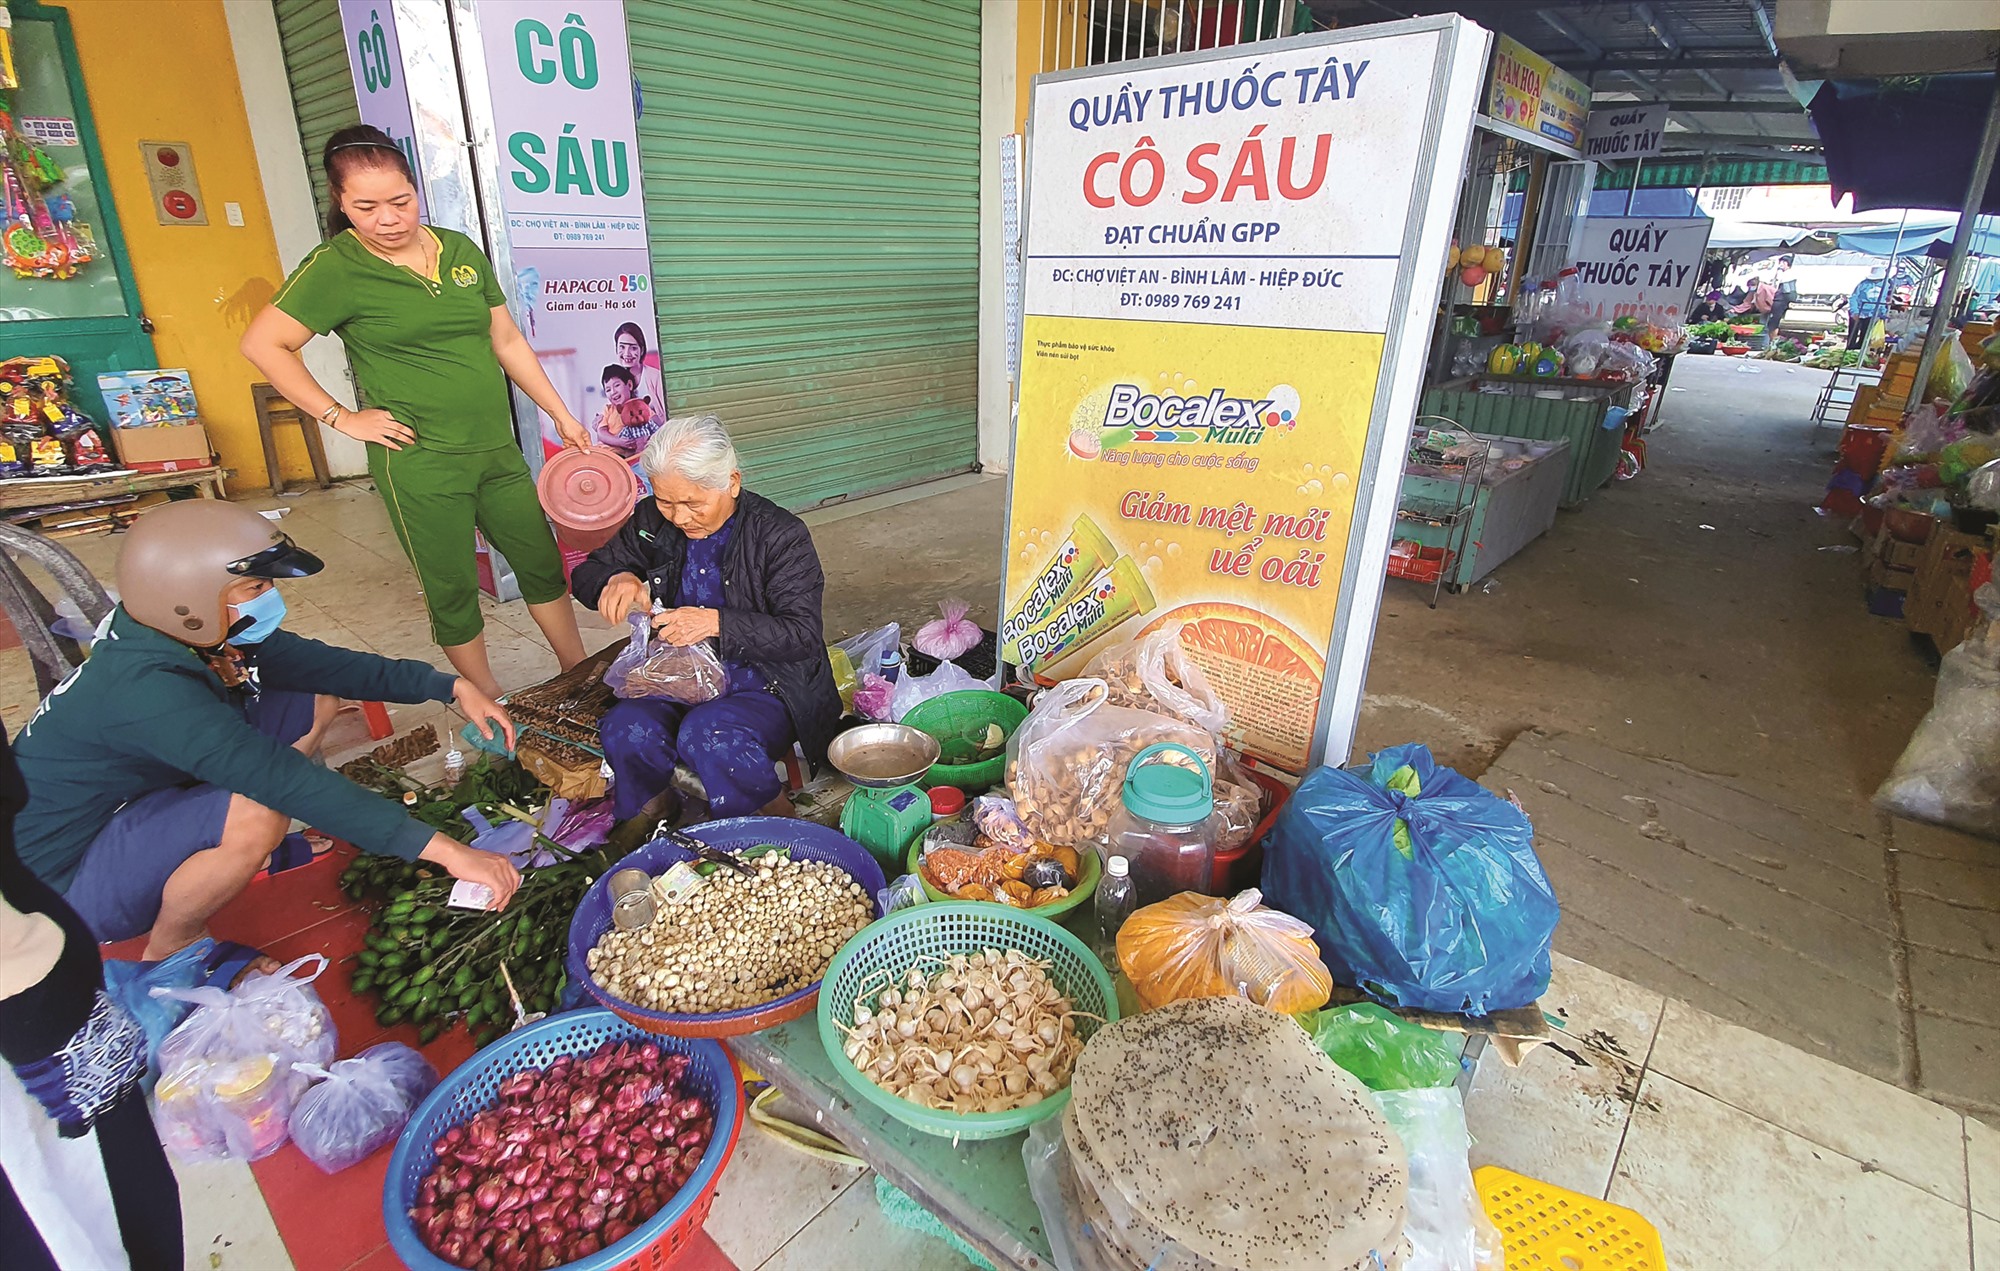 Về trung du, ghé chợ Việt An - ngôi chợ xưa tuổi đời tính bằng thế kỷ… - Ảnh 2.